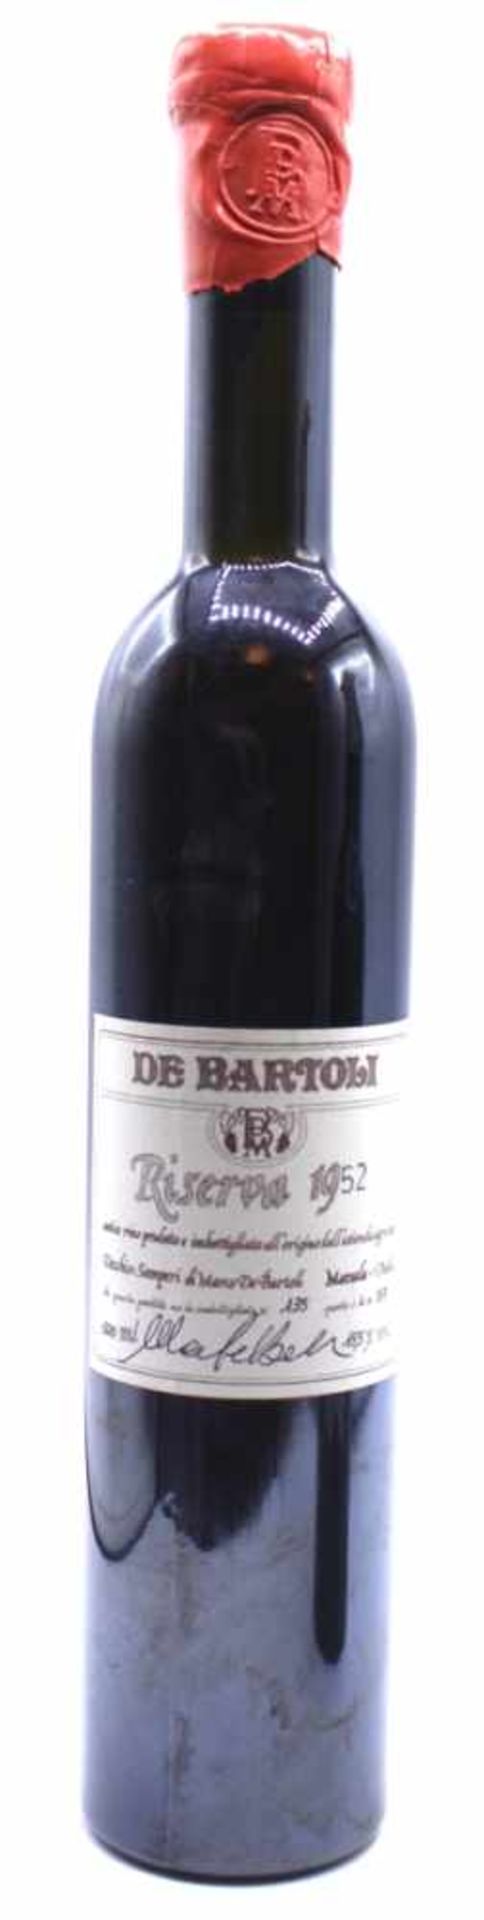 Flasche Wein - De Bartoli Riserva 1952 di questa portita ne ho imbottigliate N 135, Questo i la N.